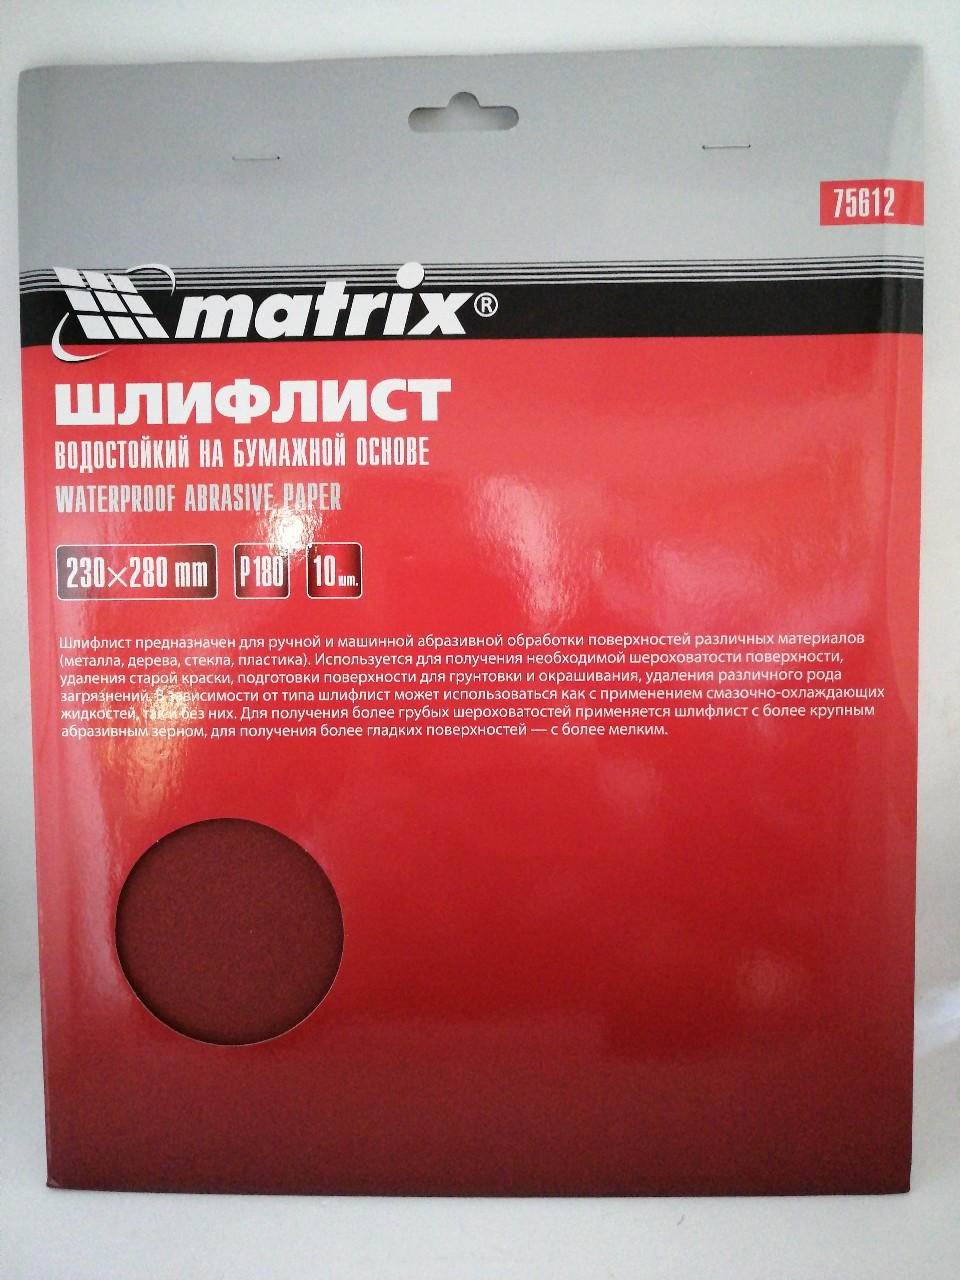 Купить запчасть MATRIX - 75612 Шлифлист на бумажной основе, P 180, 230 х 280 мм, 10 шт., водостойкий// Matrix